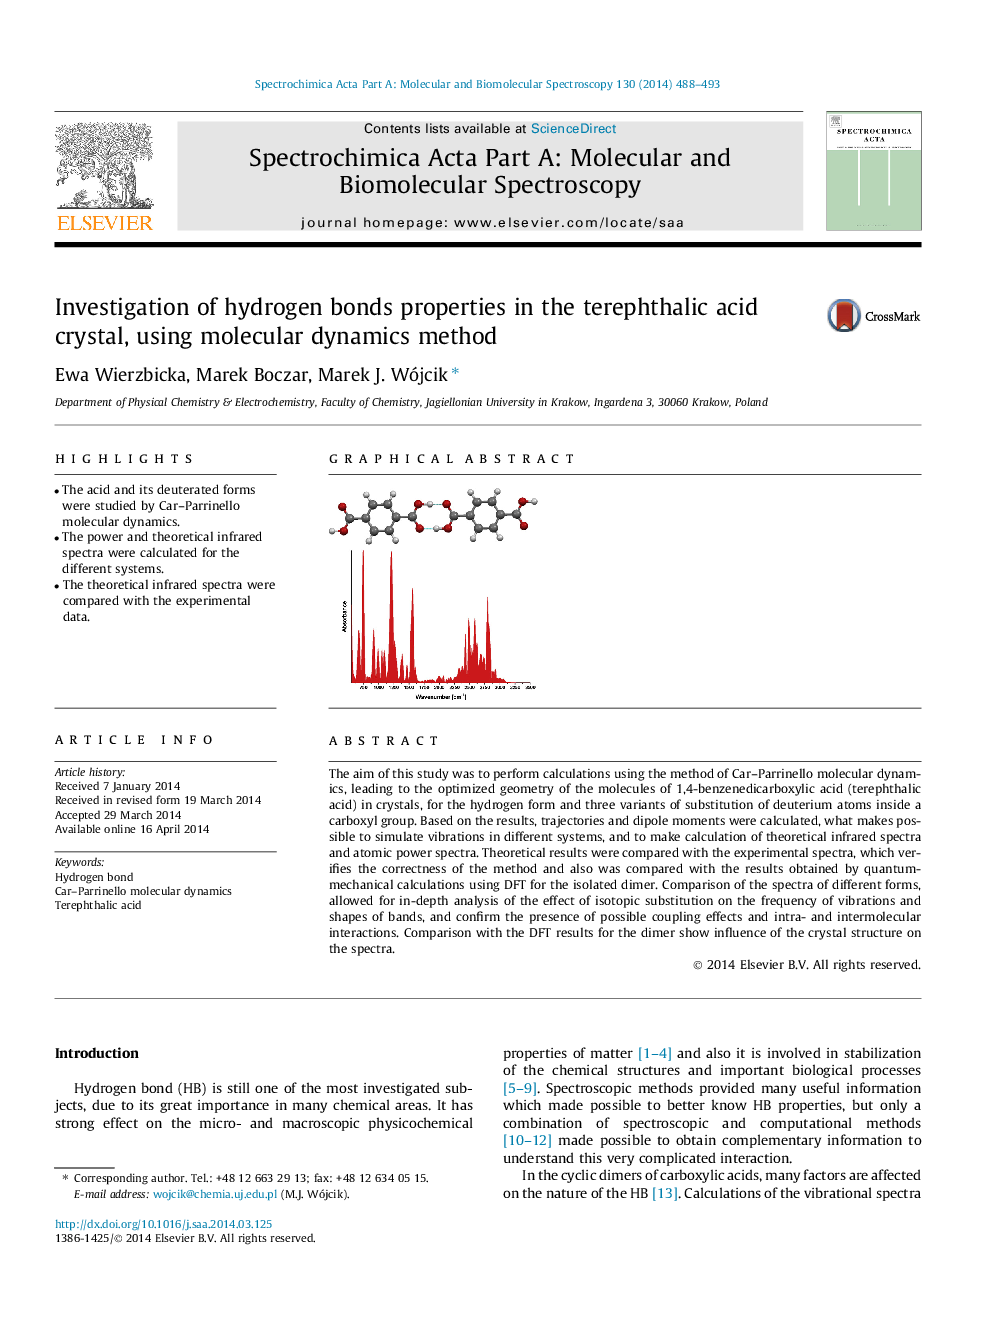 بررسی خواص پیوند هیدروژنی در کریستال اسید تترافاتیک، با استفاده از روش پویایی مولکولی 